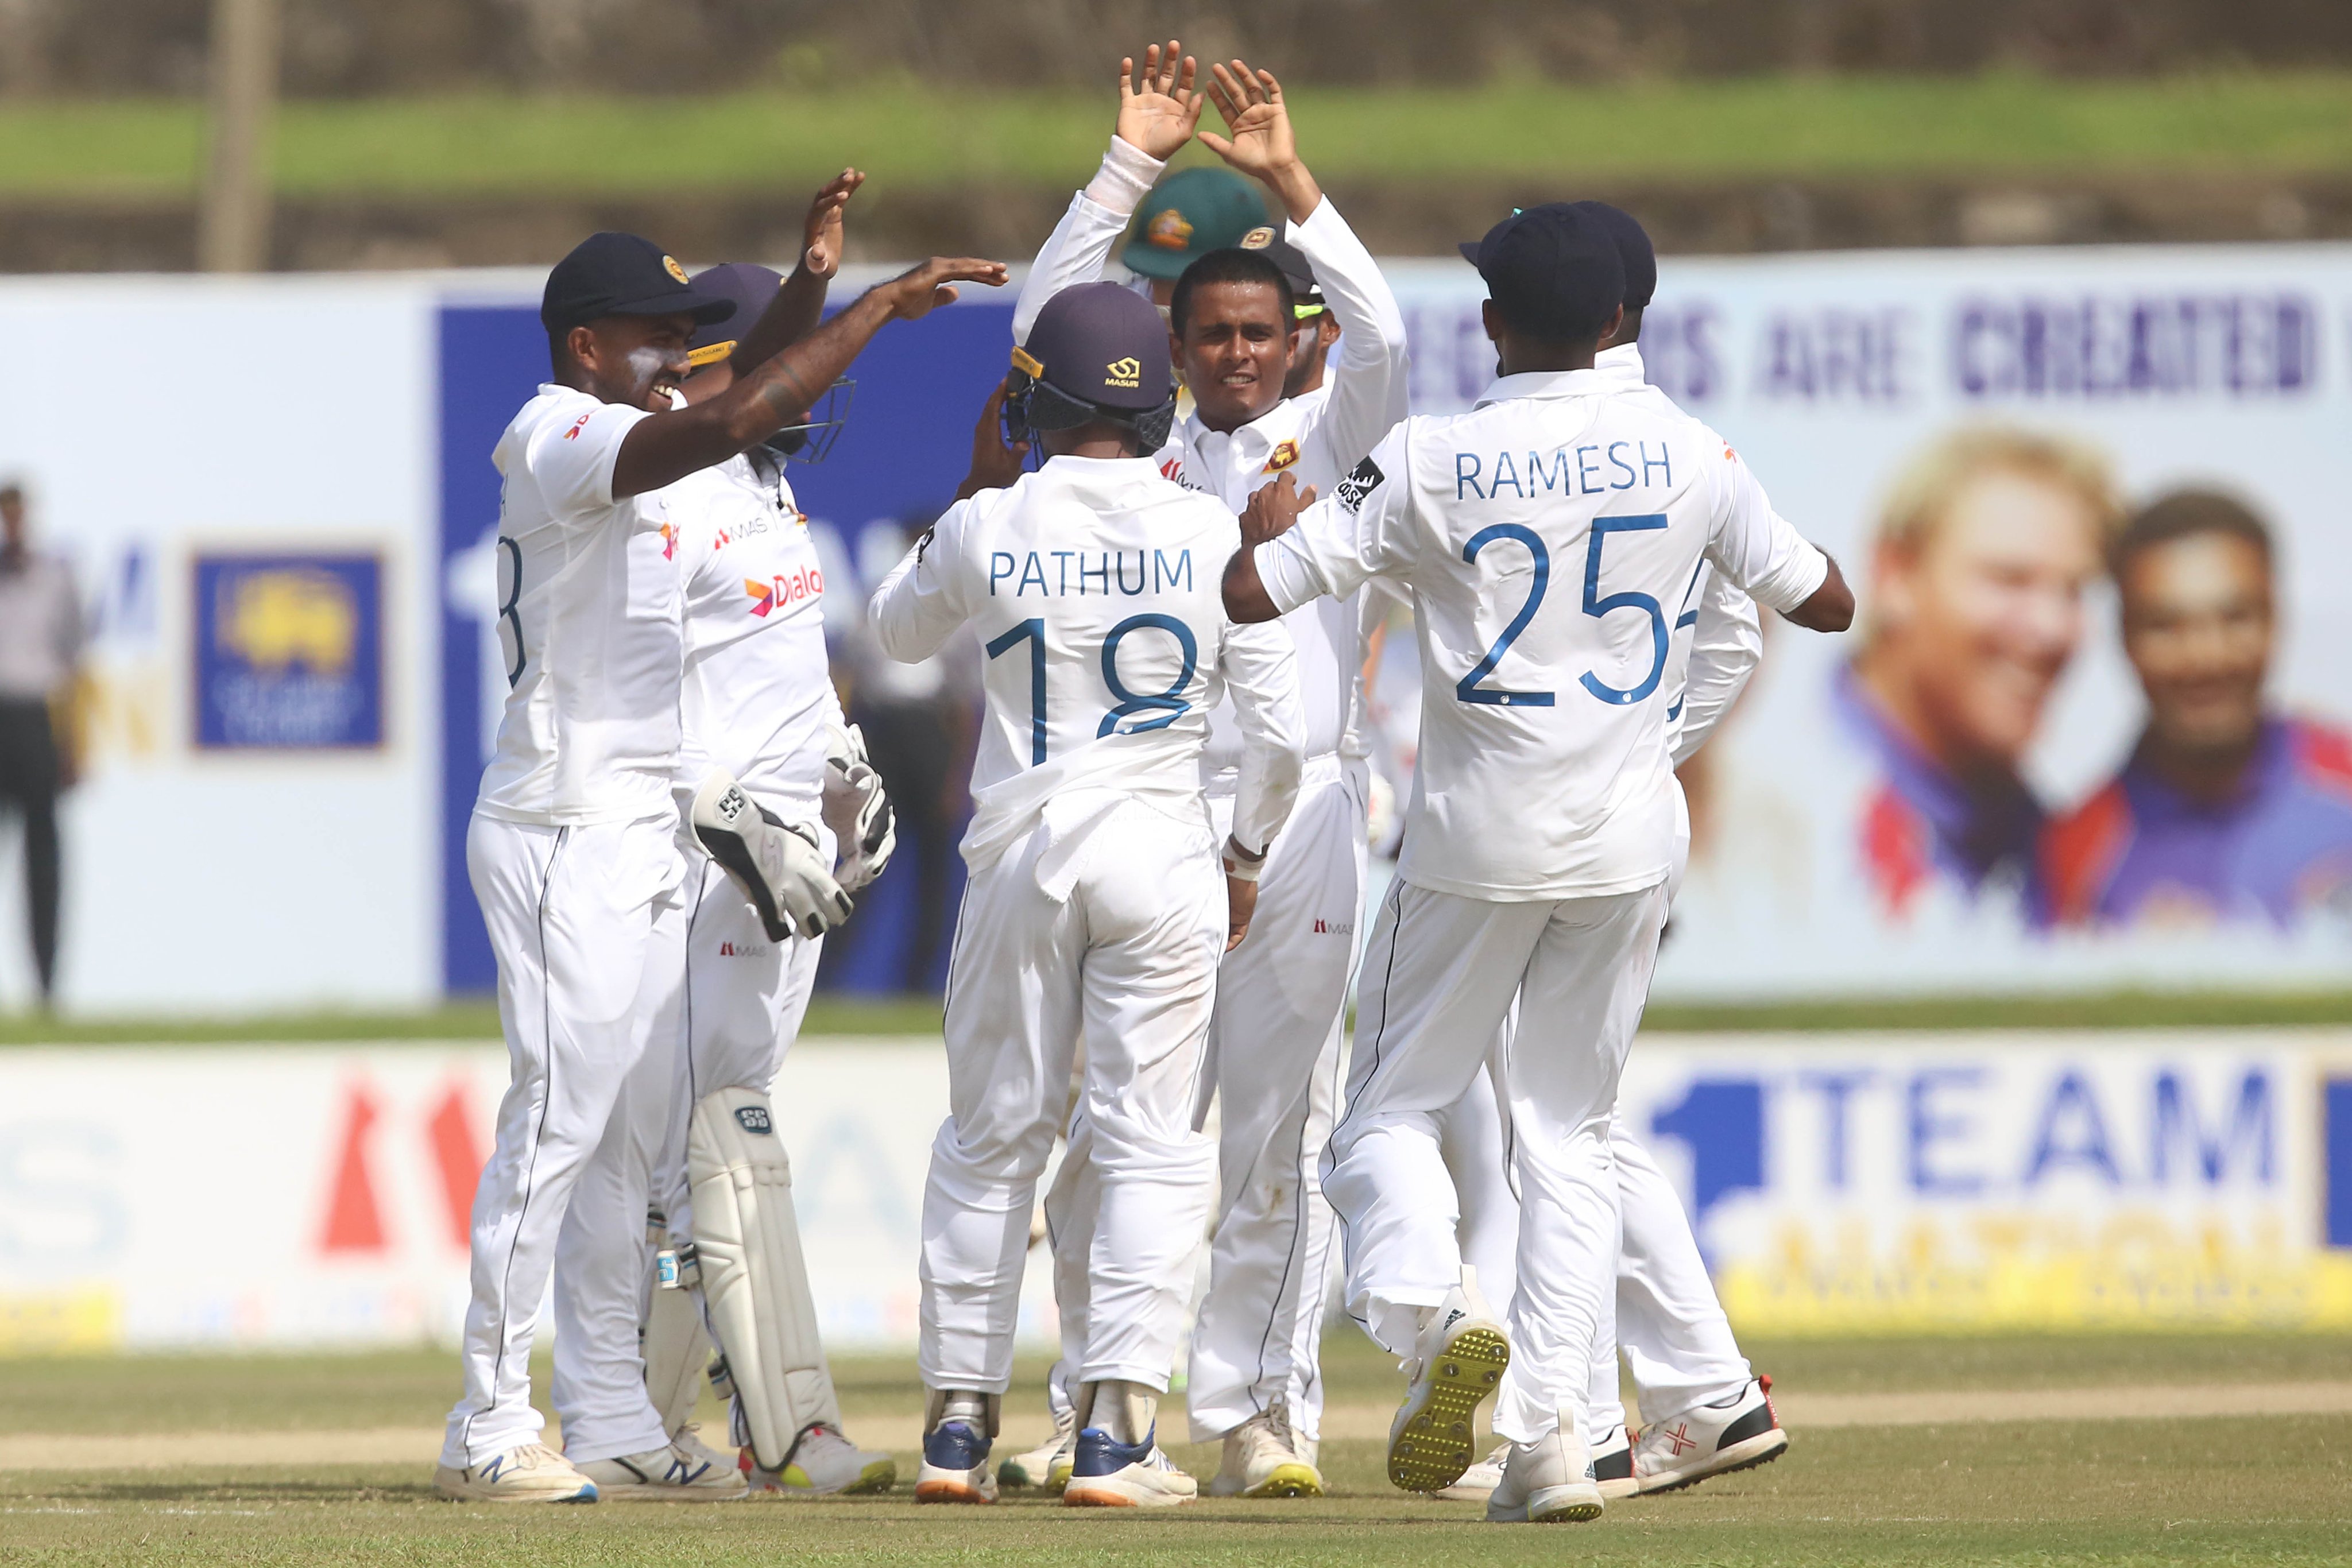 SL vs PAK | Sri Lanka names 18-member squad for Pakistan Test series